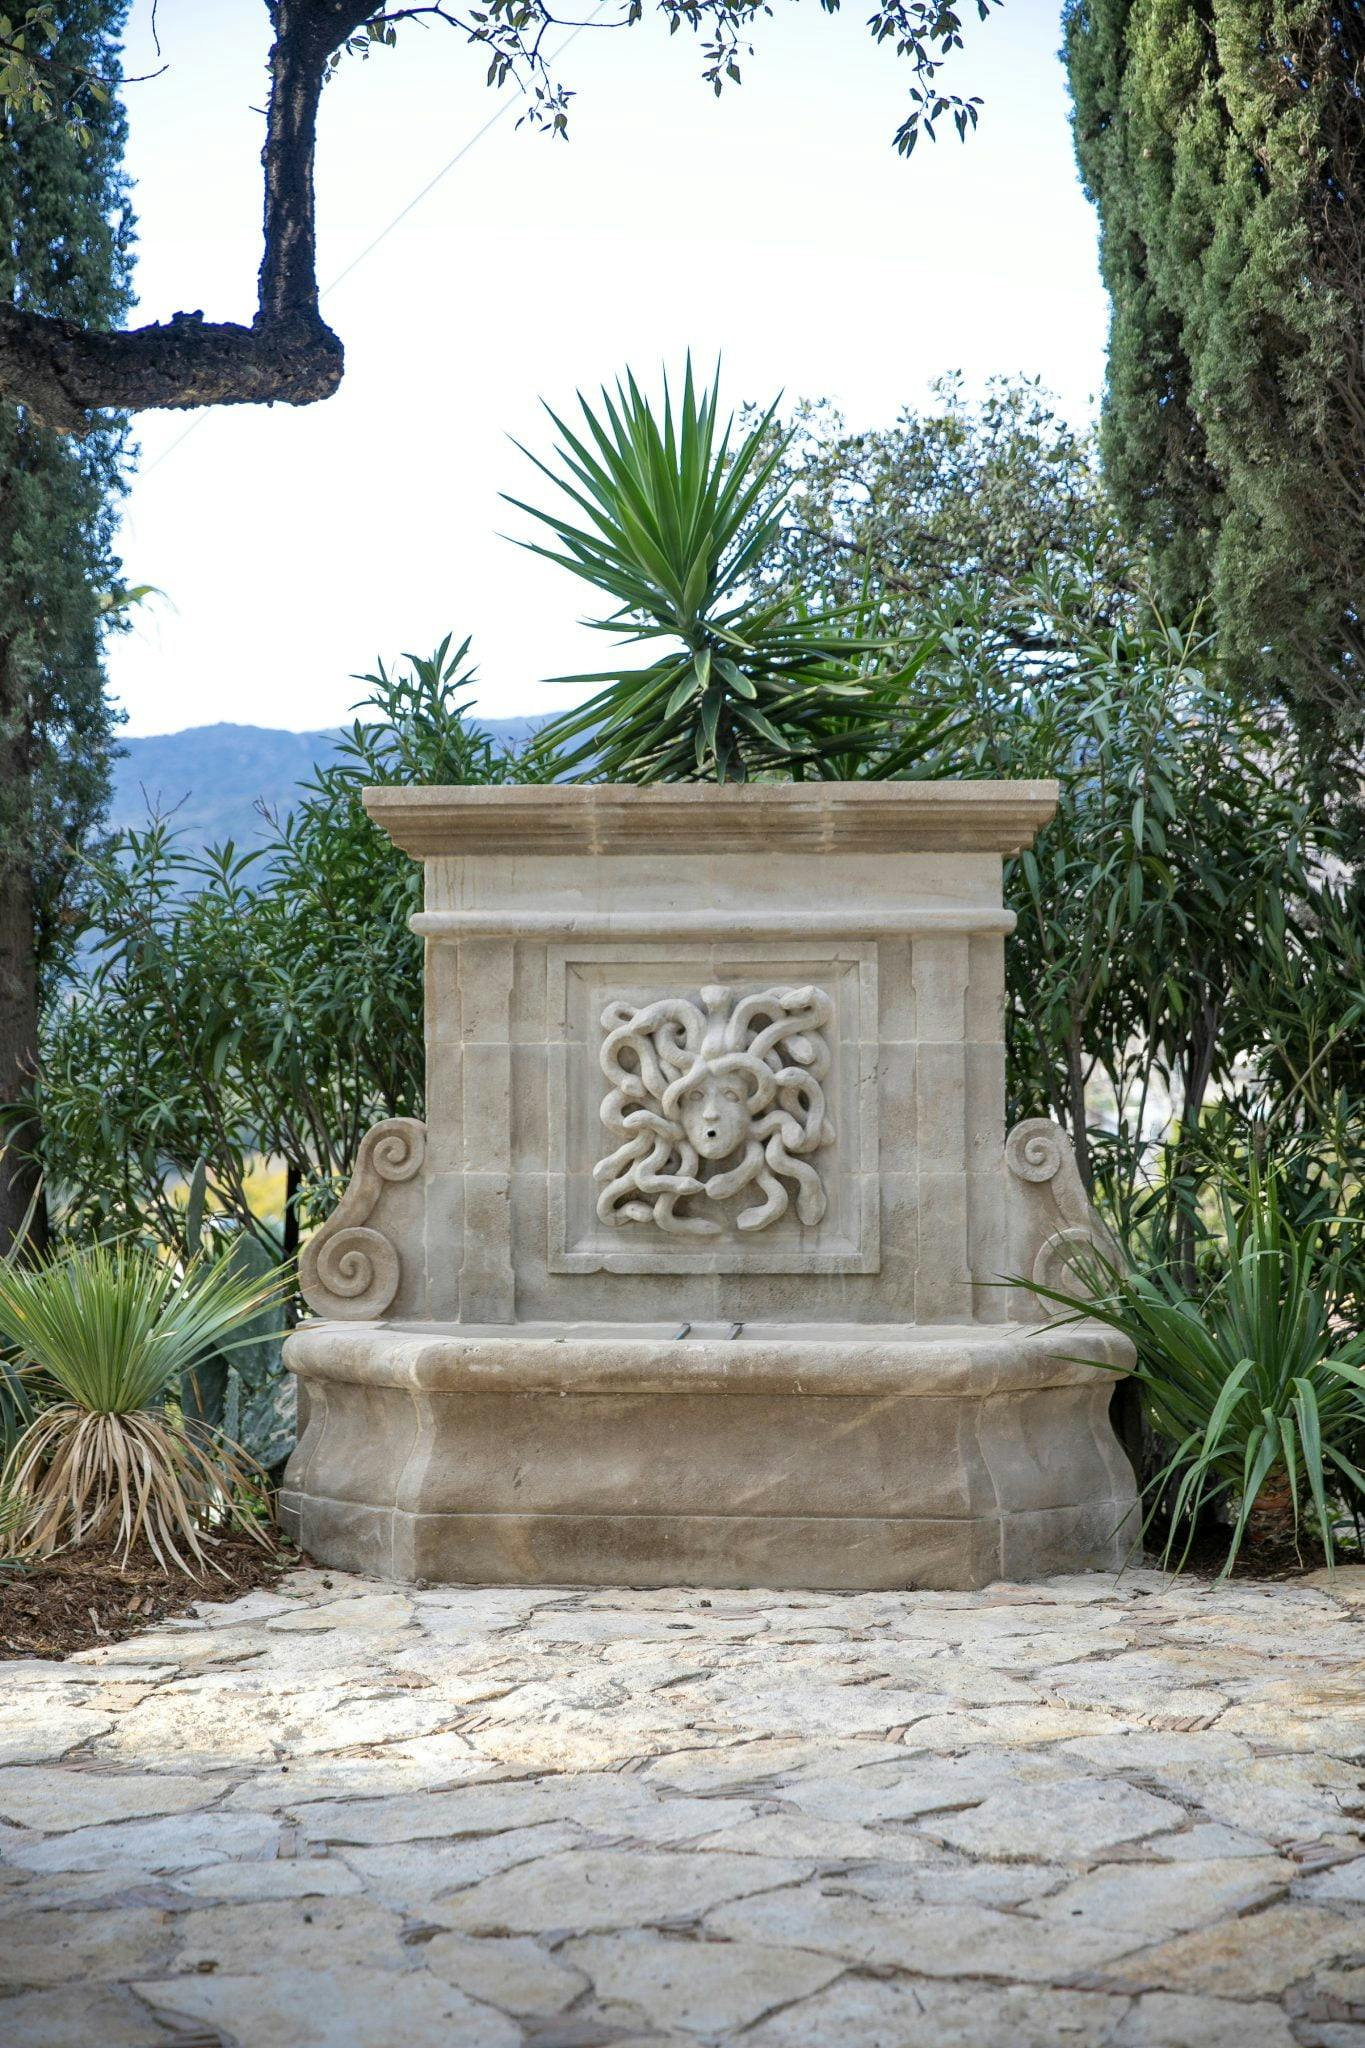 Fontaine en pierre d'origine dans le jardin et son octopus